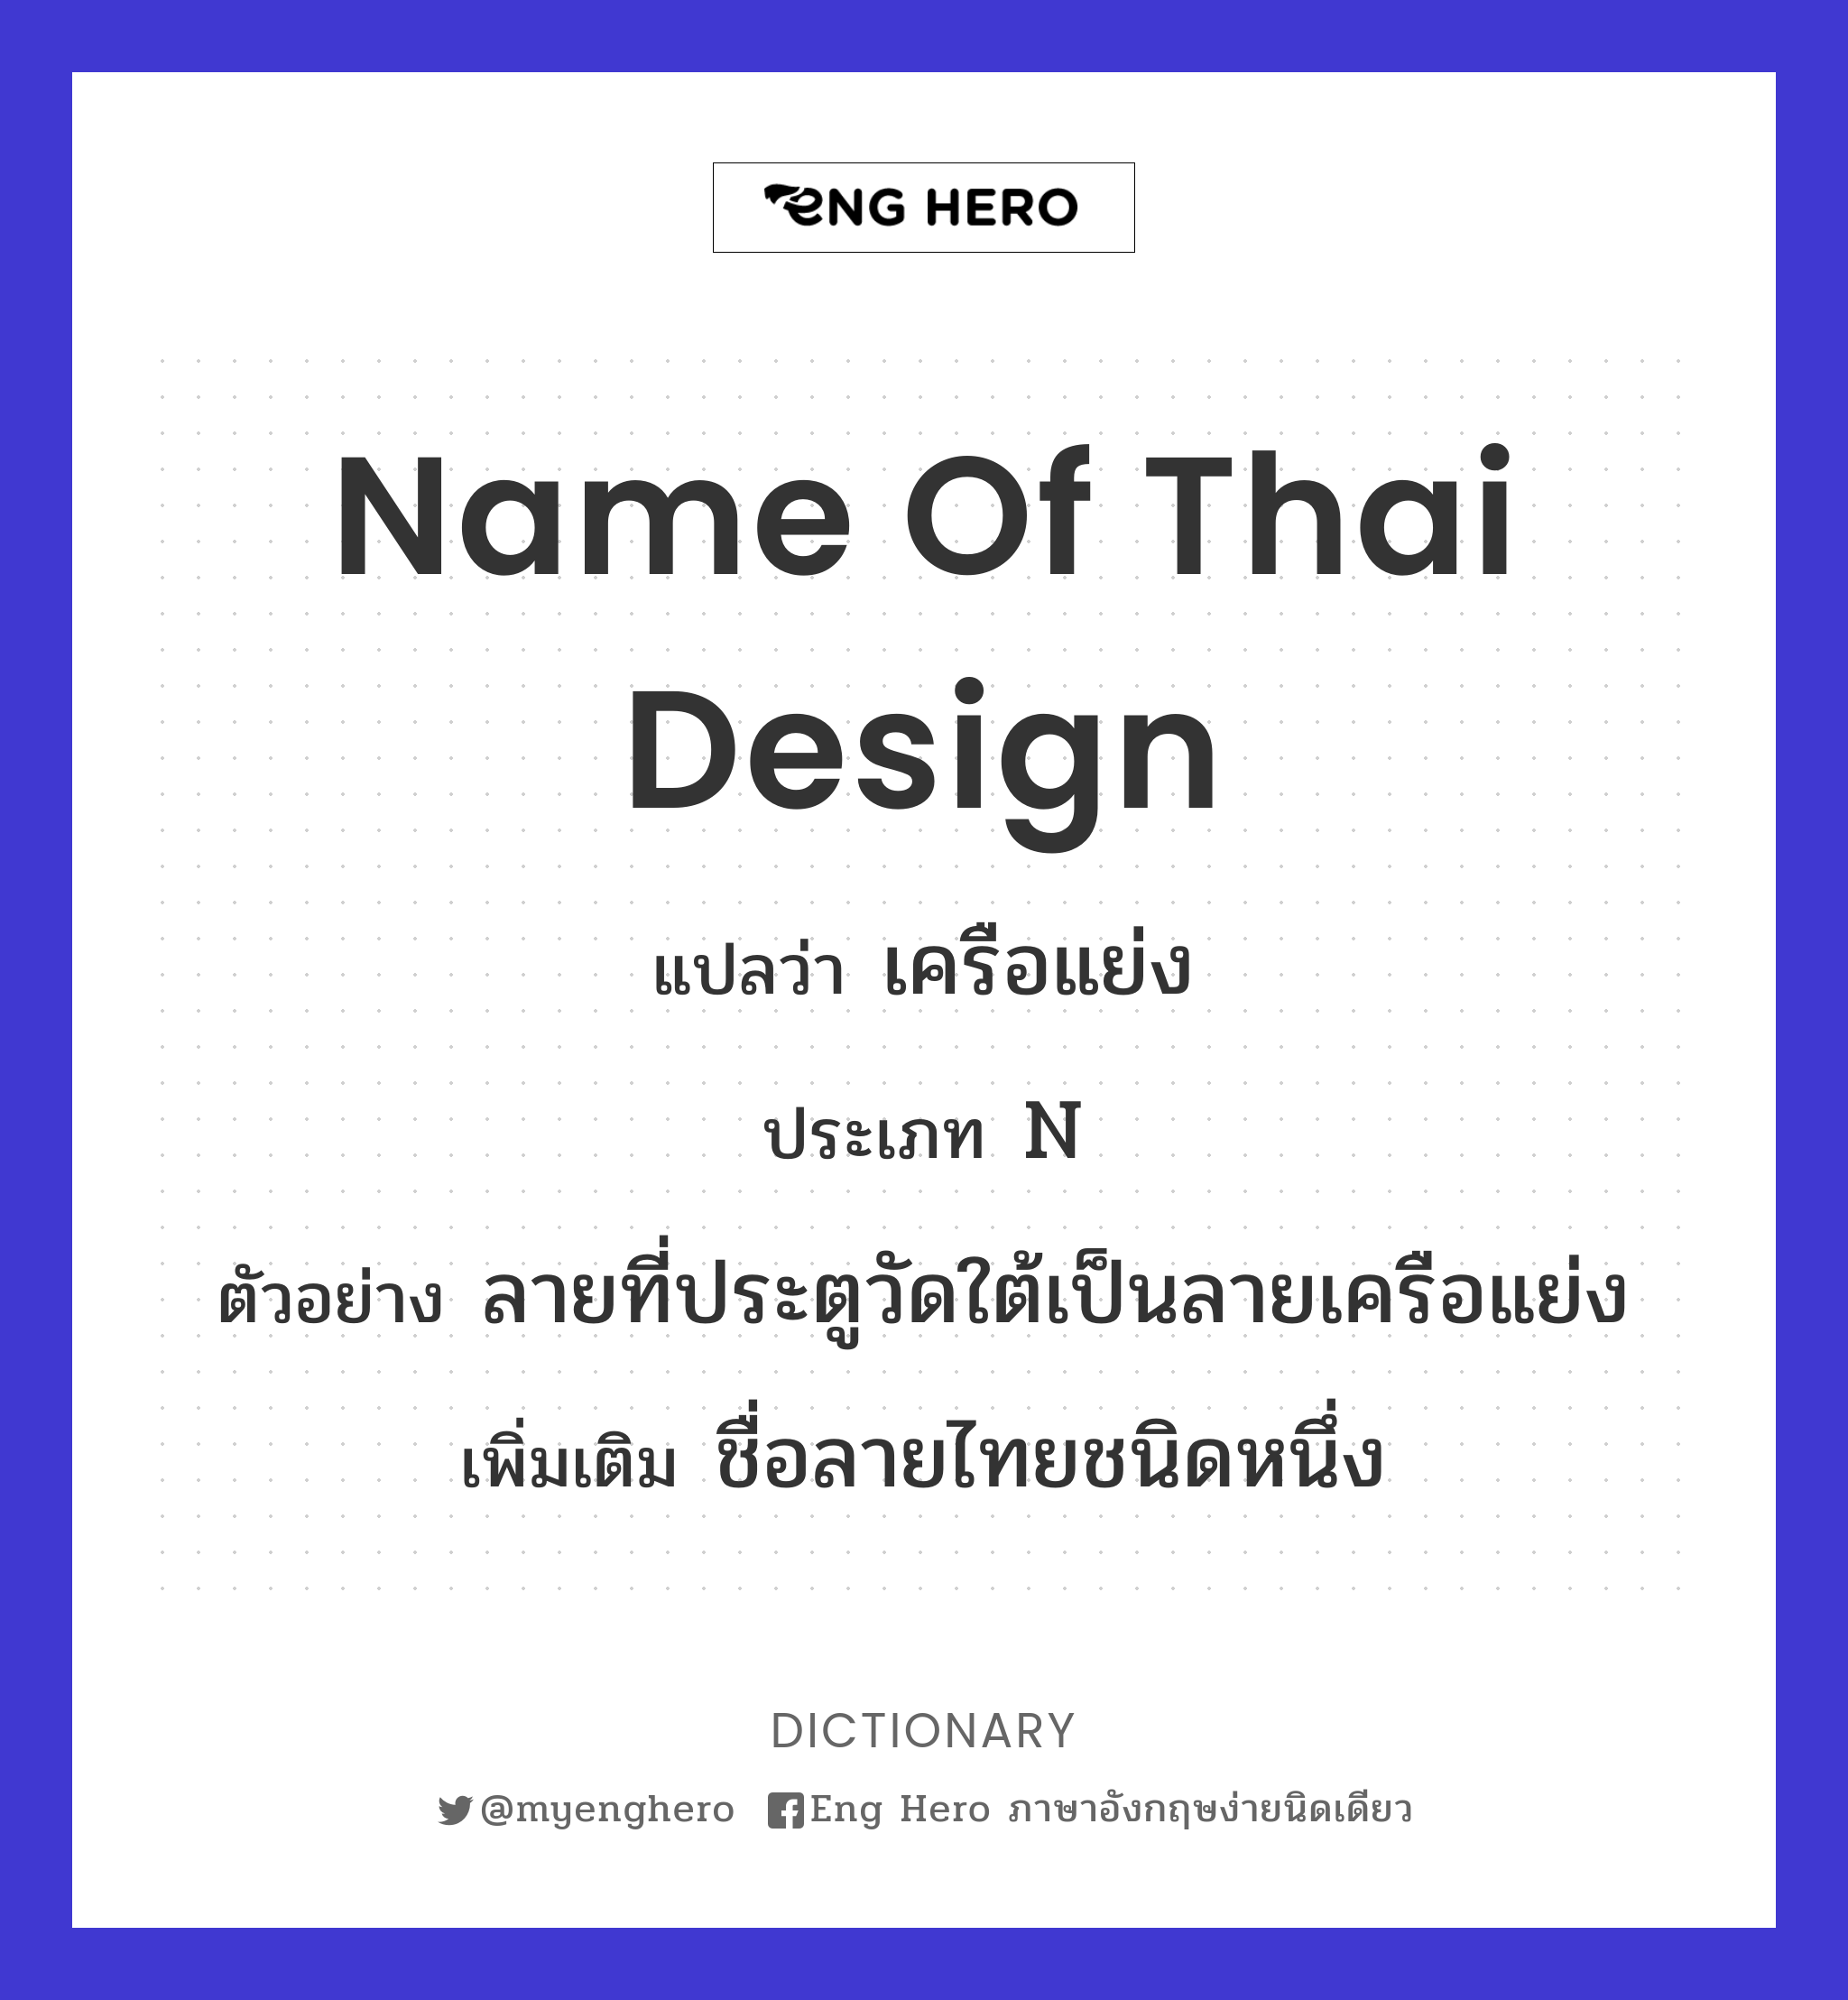 name of Thai design